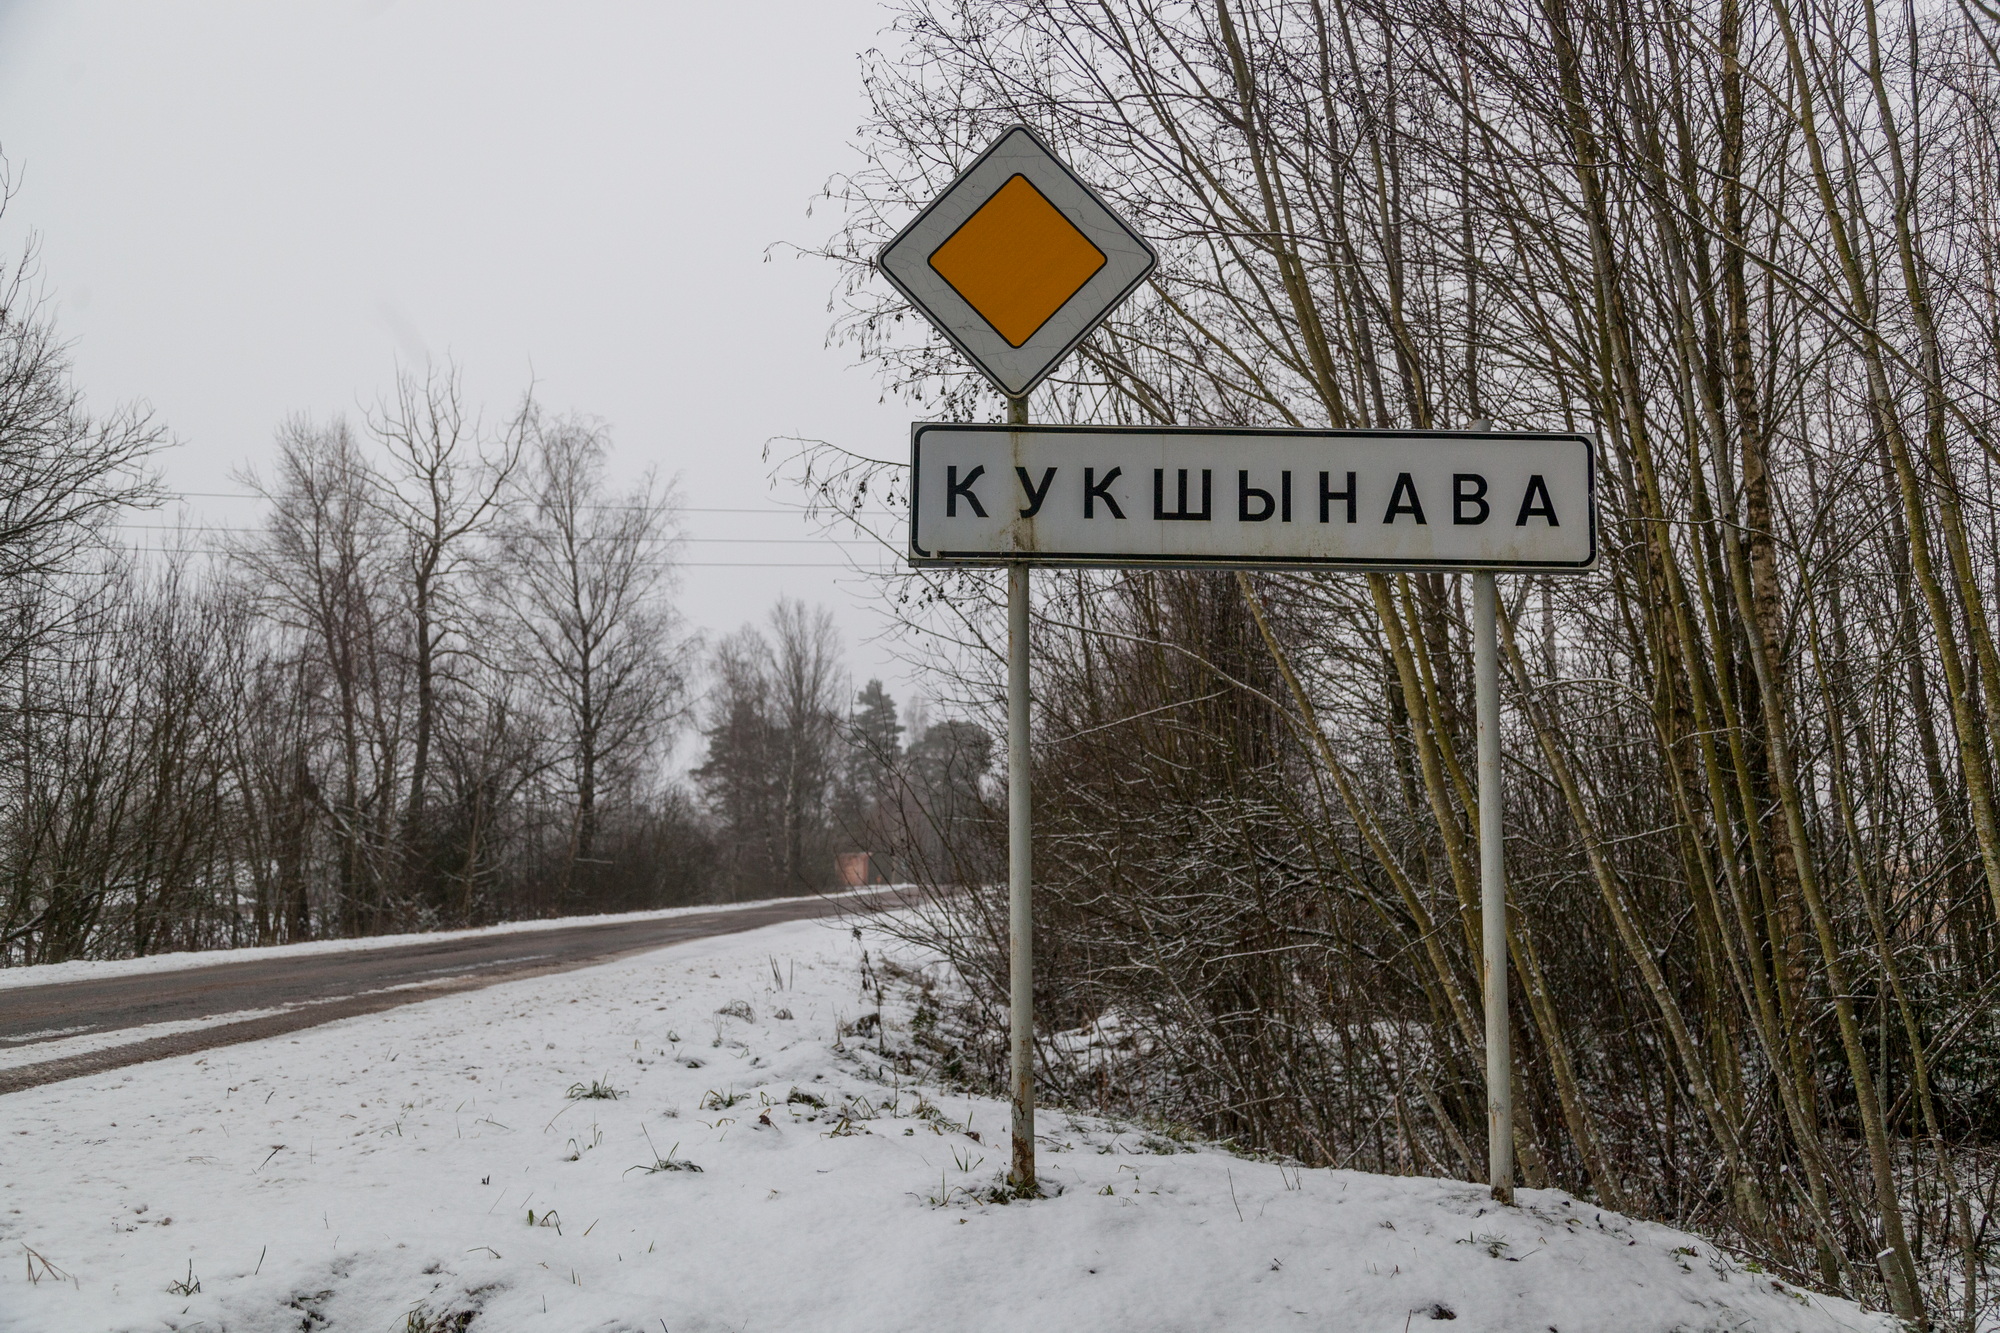 Кукшиновская "атомная" площадка 13 лет спустя